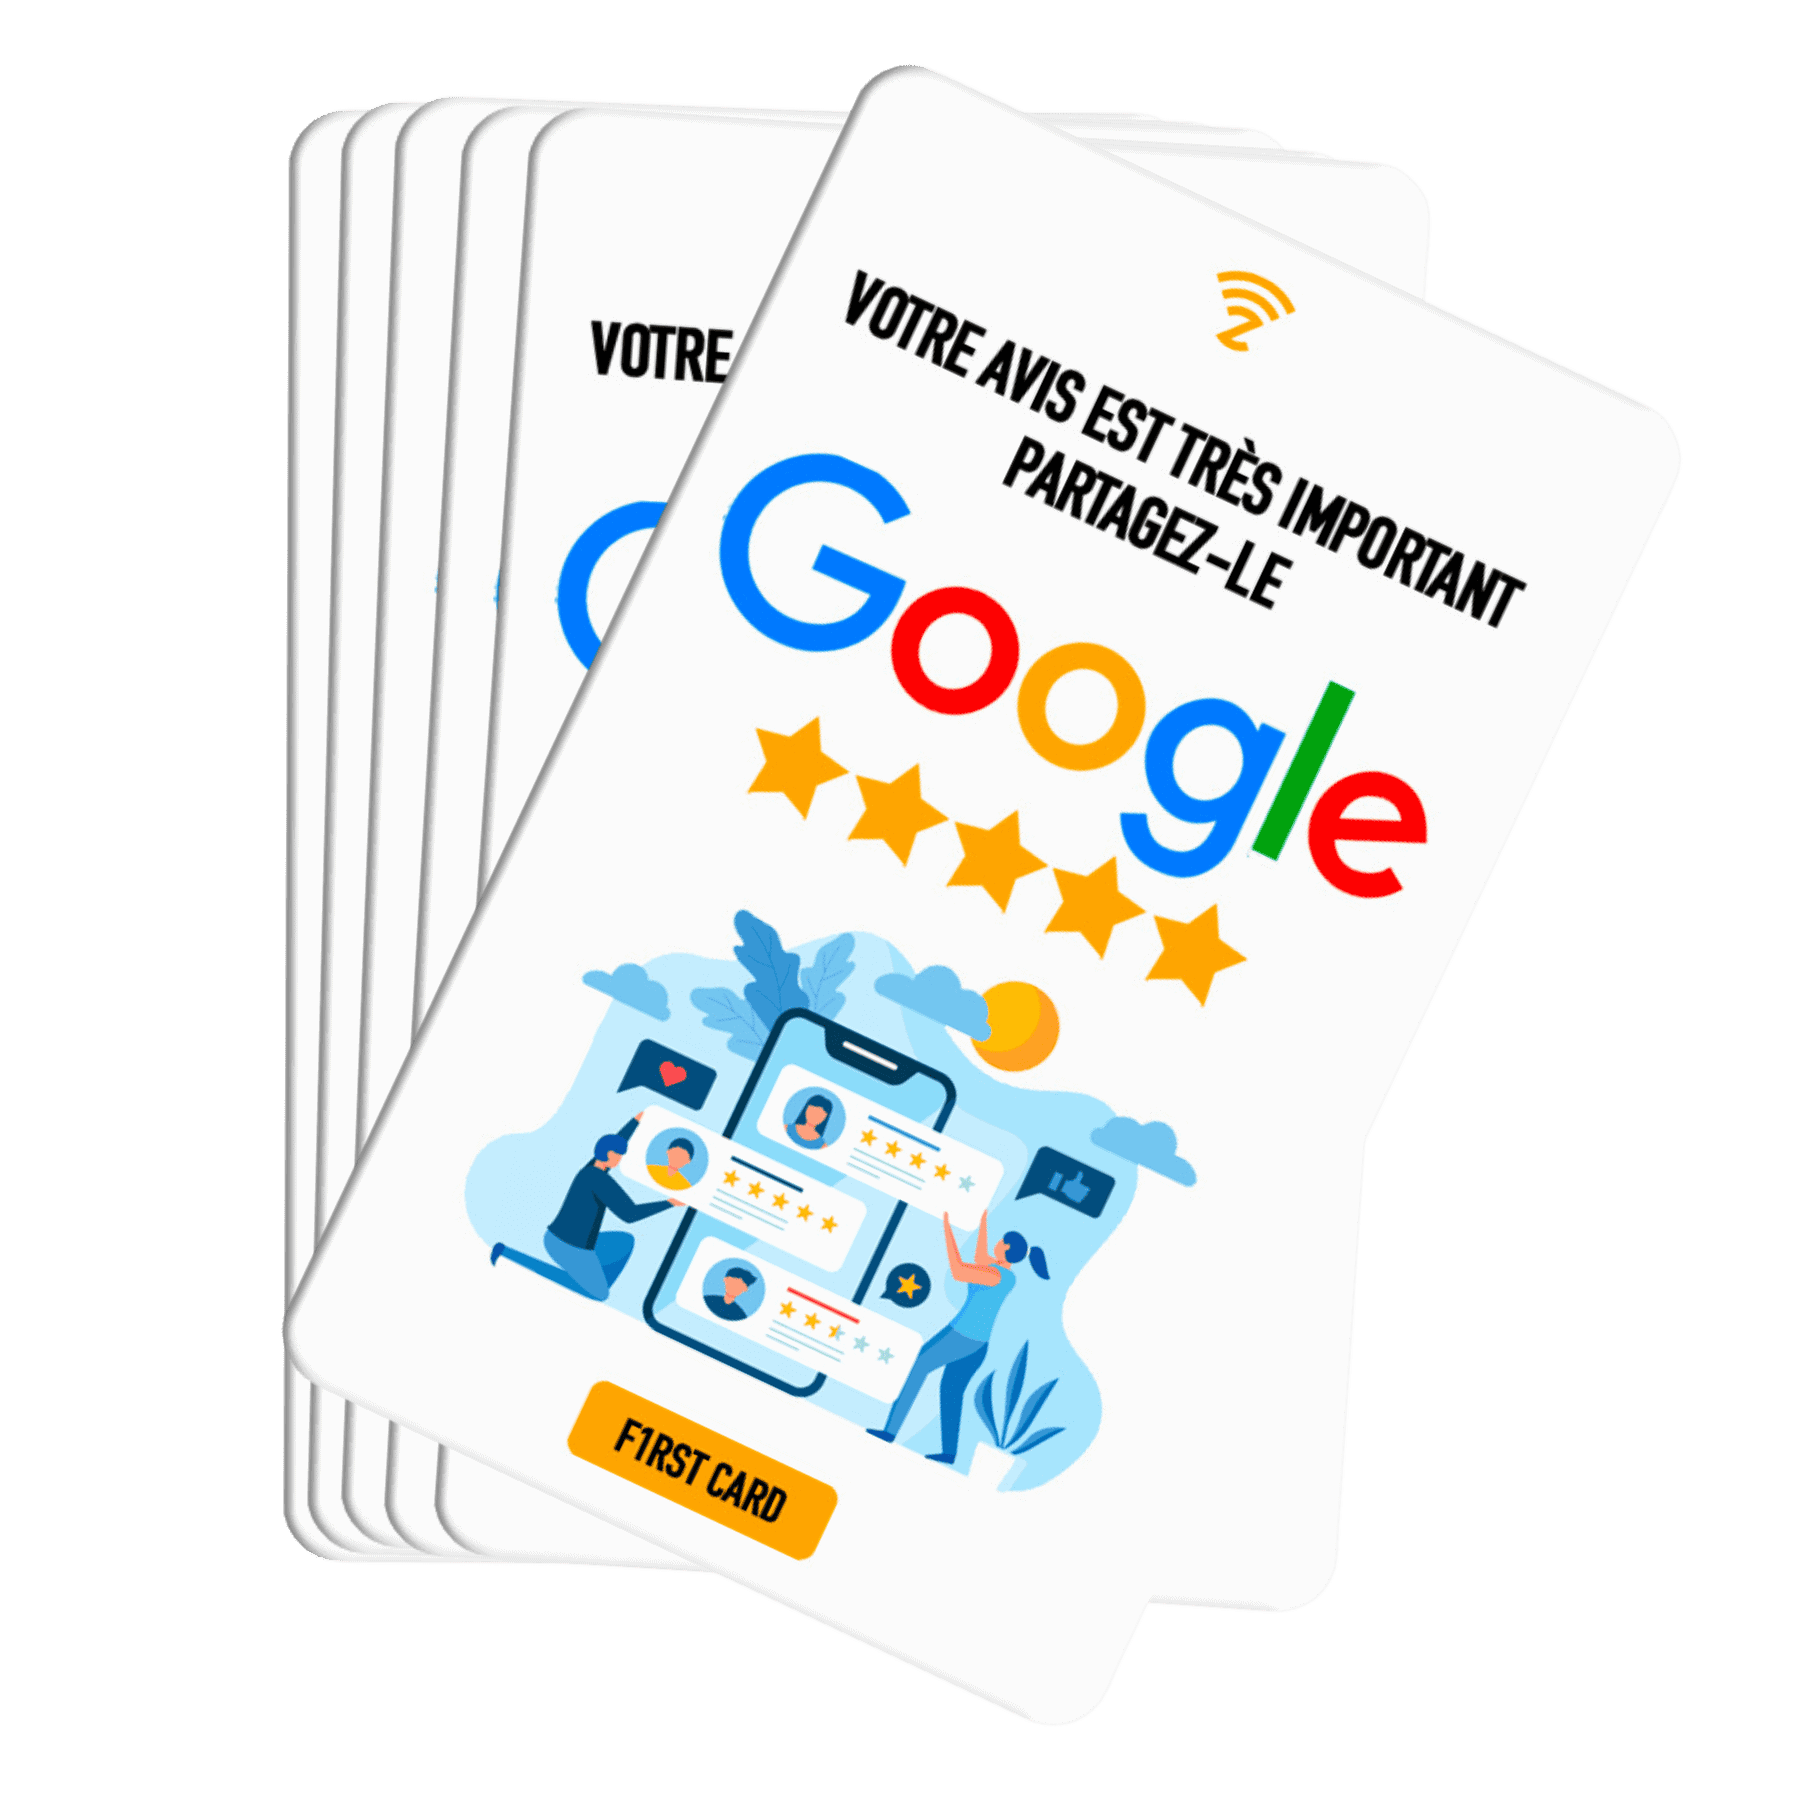 La carte avis google Google F1RST de F1RST CARD. une carte nfc connectée pour les entreprises